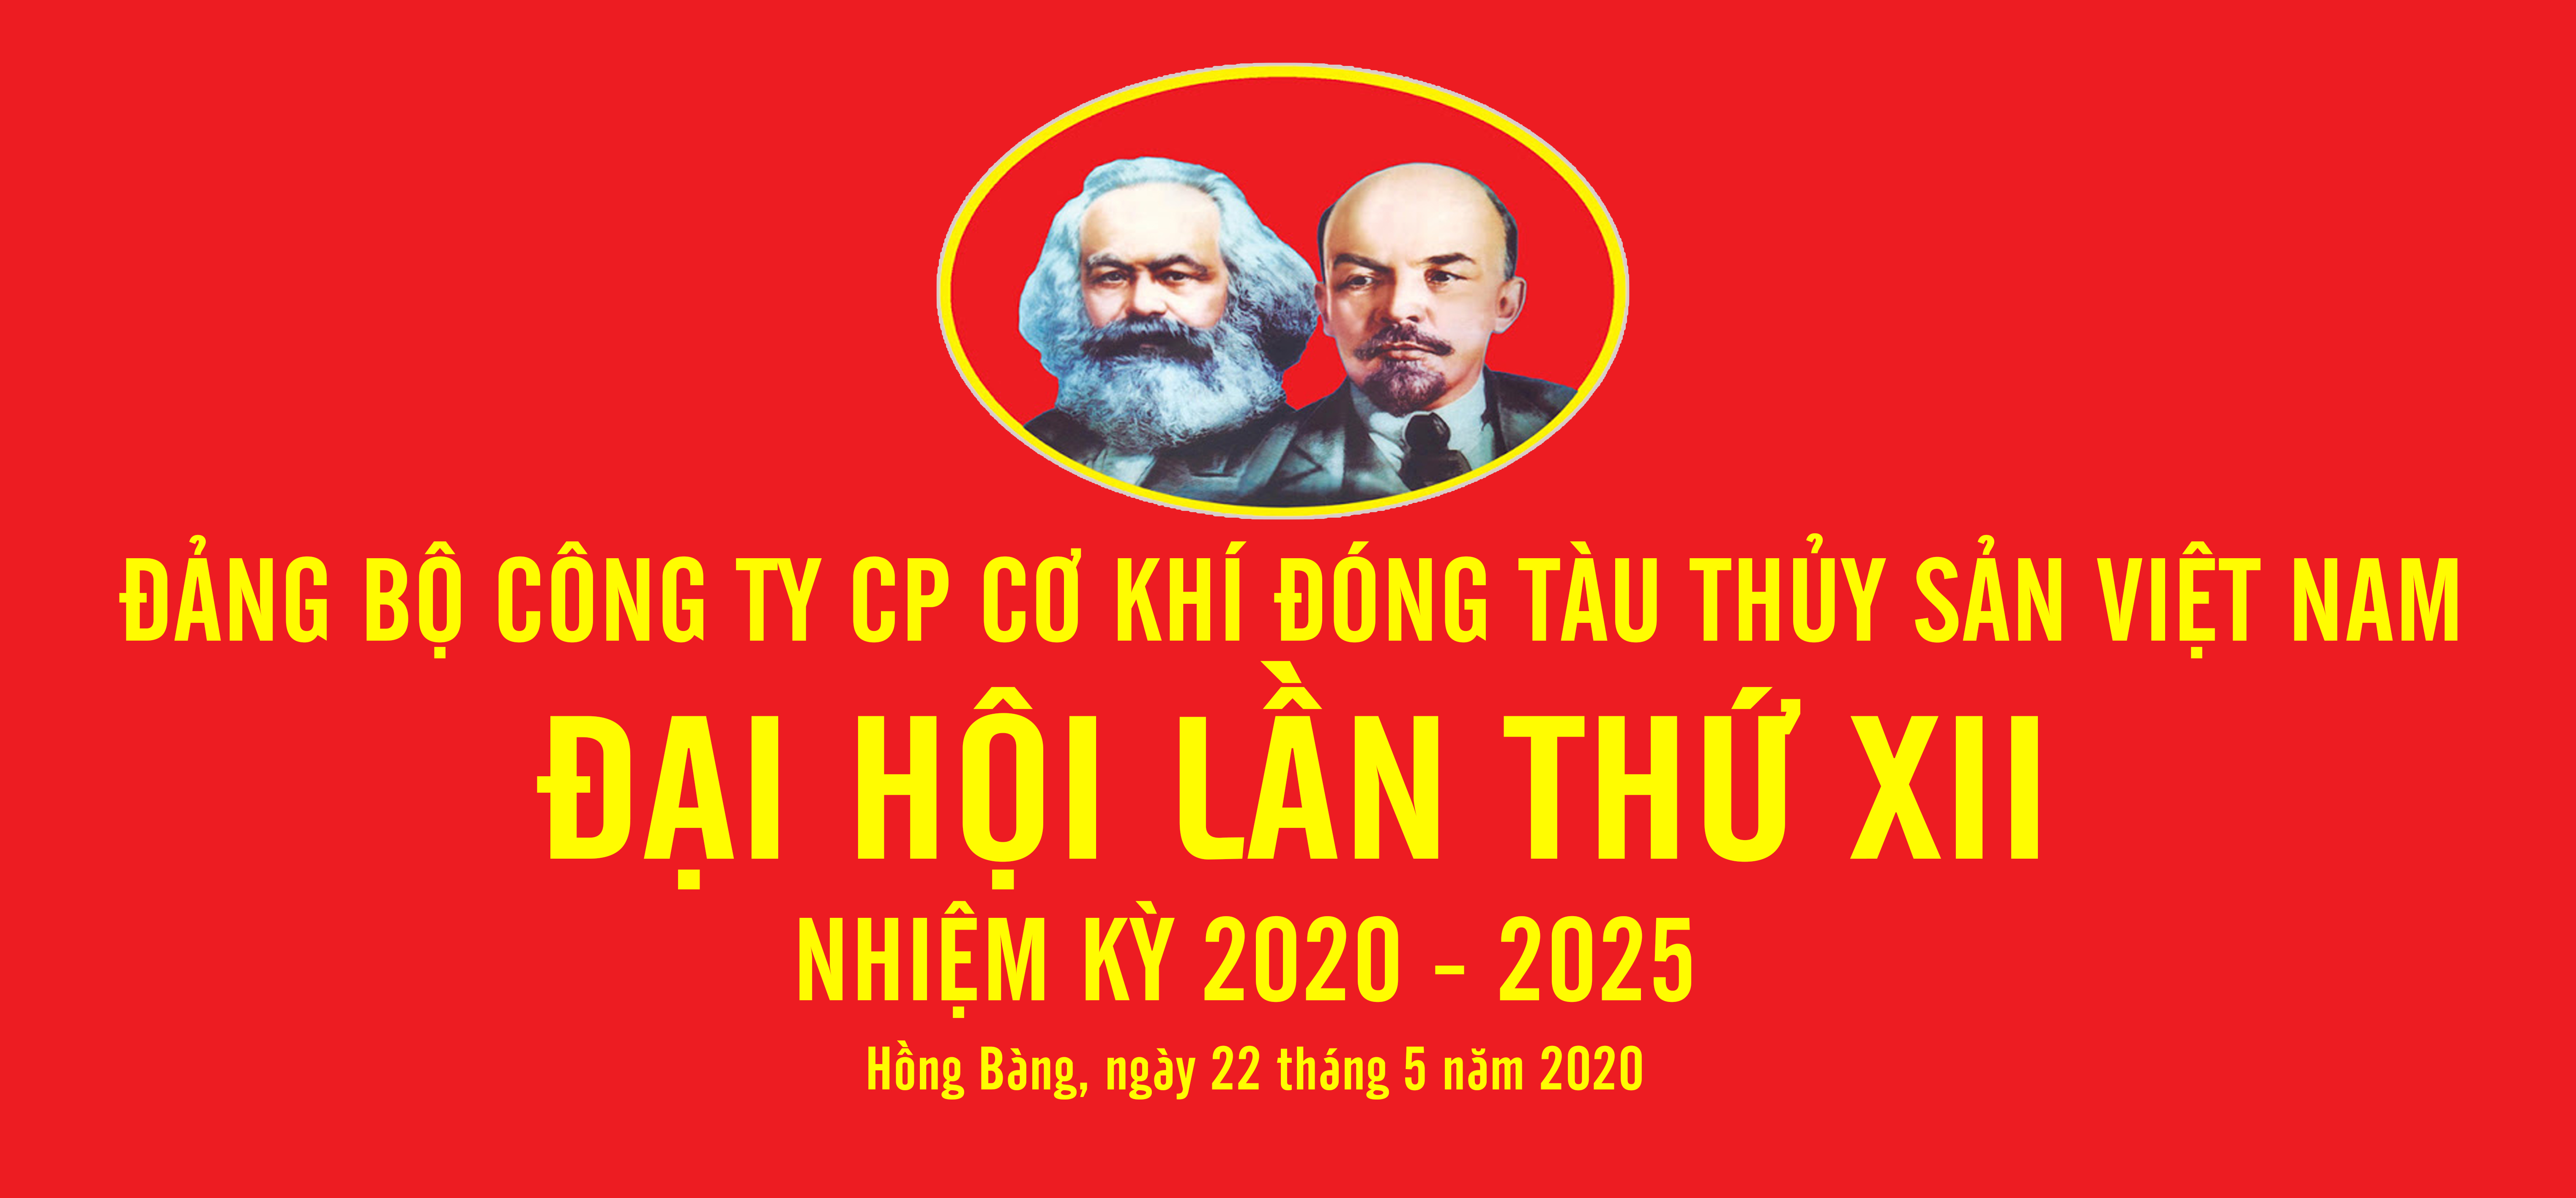 Đảng bộ Công ty CP Cơ khí đóng tàu Thủy sản Việt Nam Khóa 12 - nhiệm kỳ 2020-2025